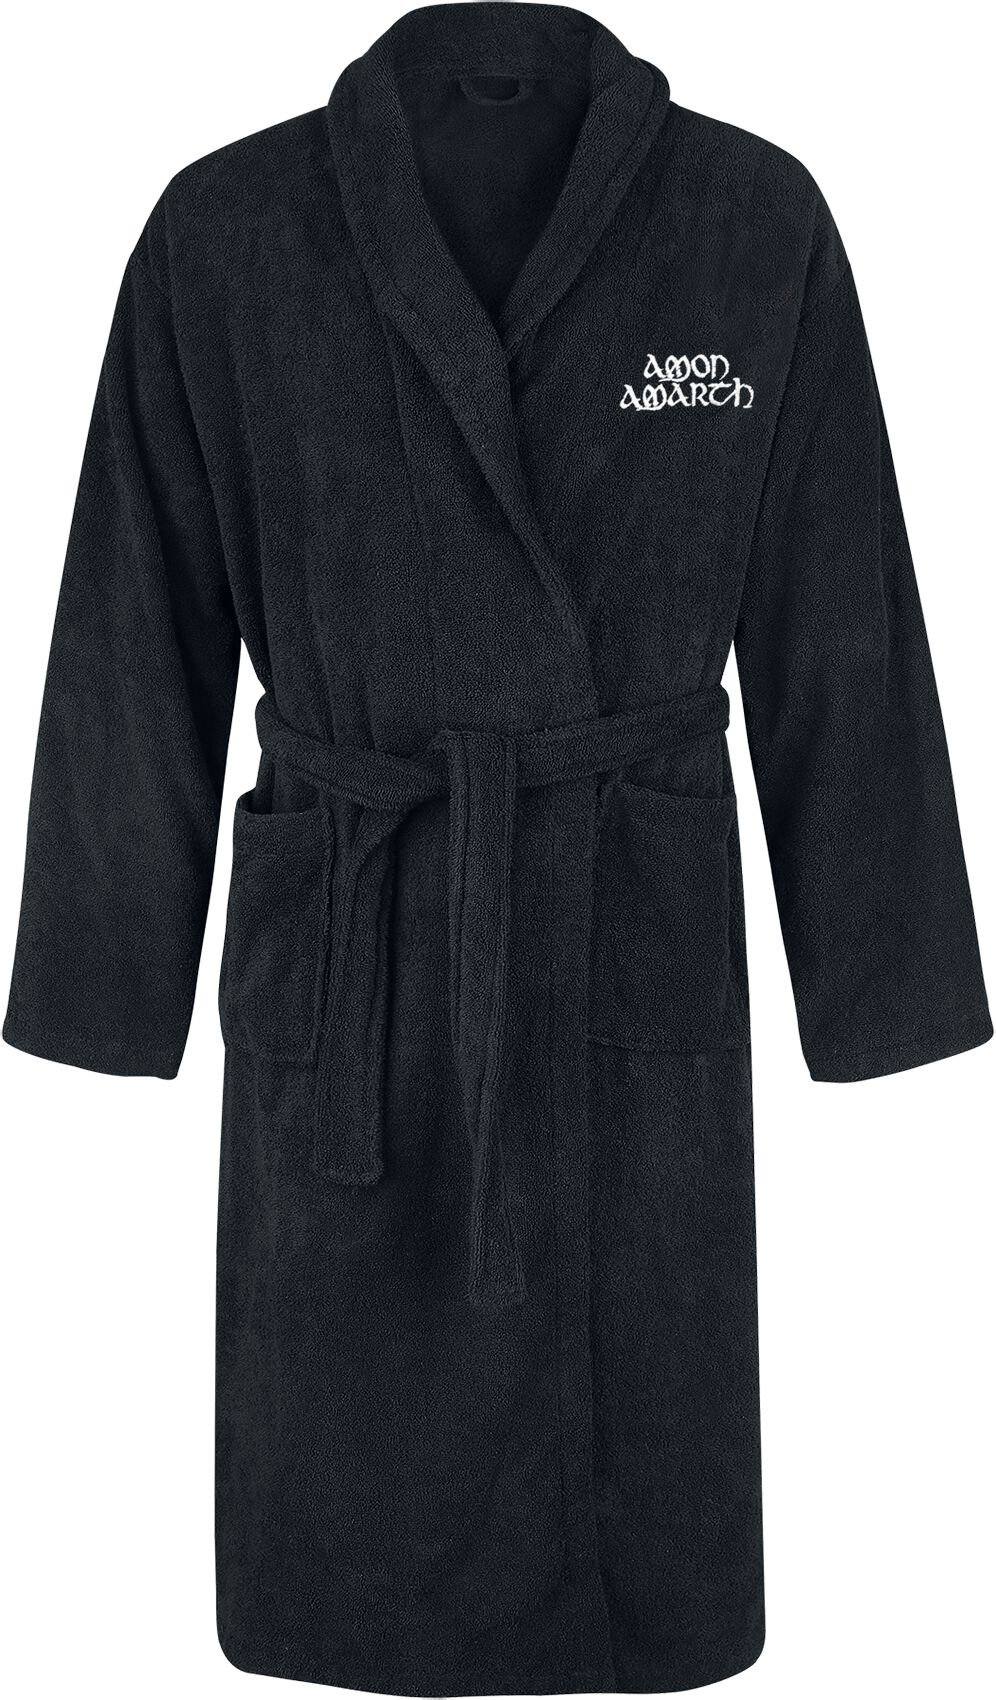 Amon Amarth Bademantel - Logo - S-M bis XXL-3XL - Größe L-XL - schwarz  - EMP exklusives Merchandise!